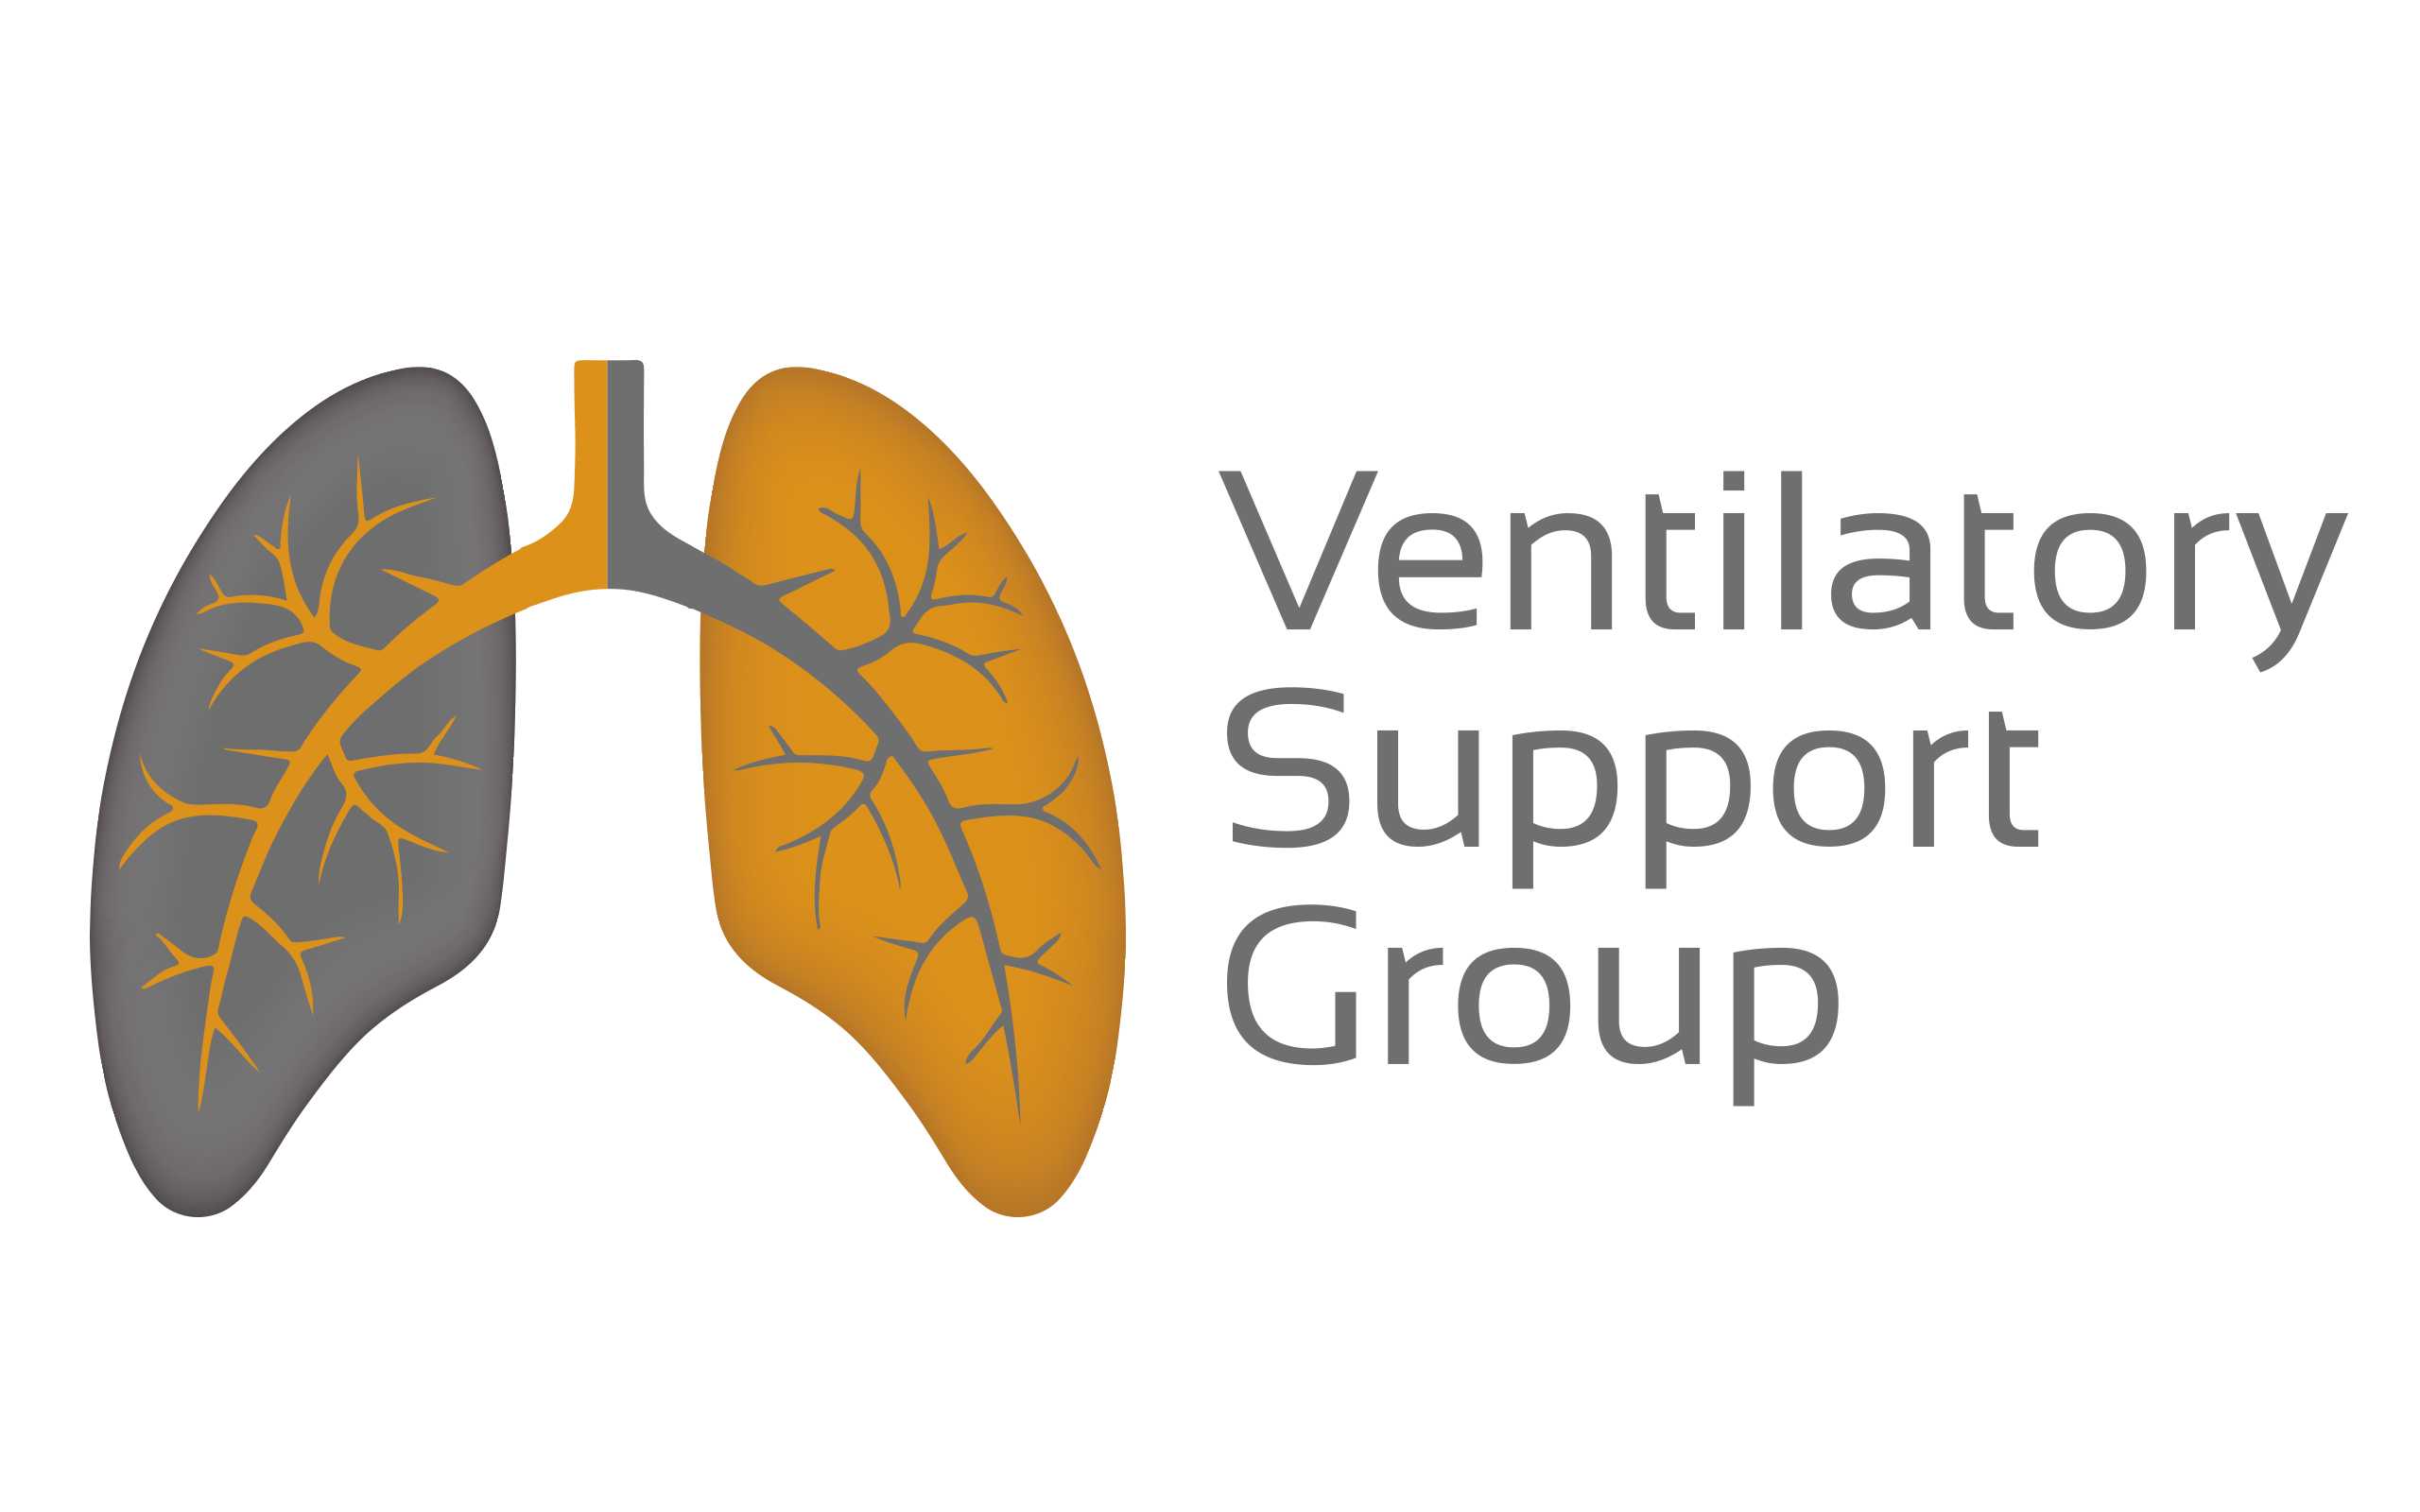 Ventilatory Support Group S.A de C.V Renta y venta de equipo médico ventilatorio